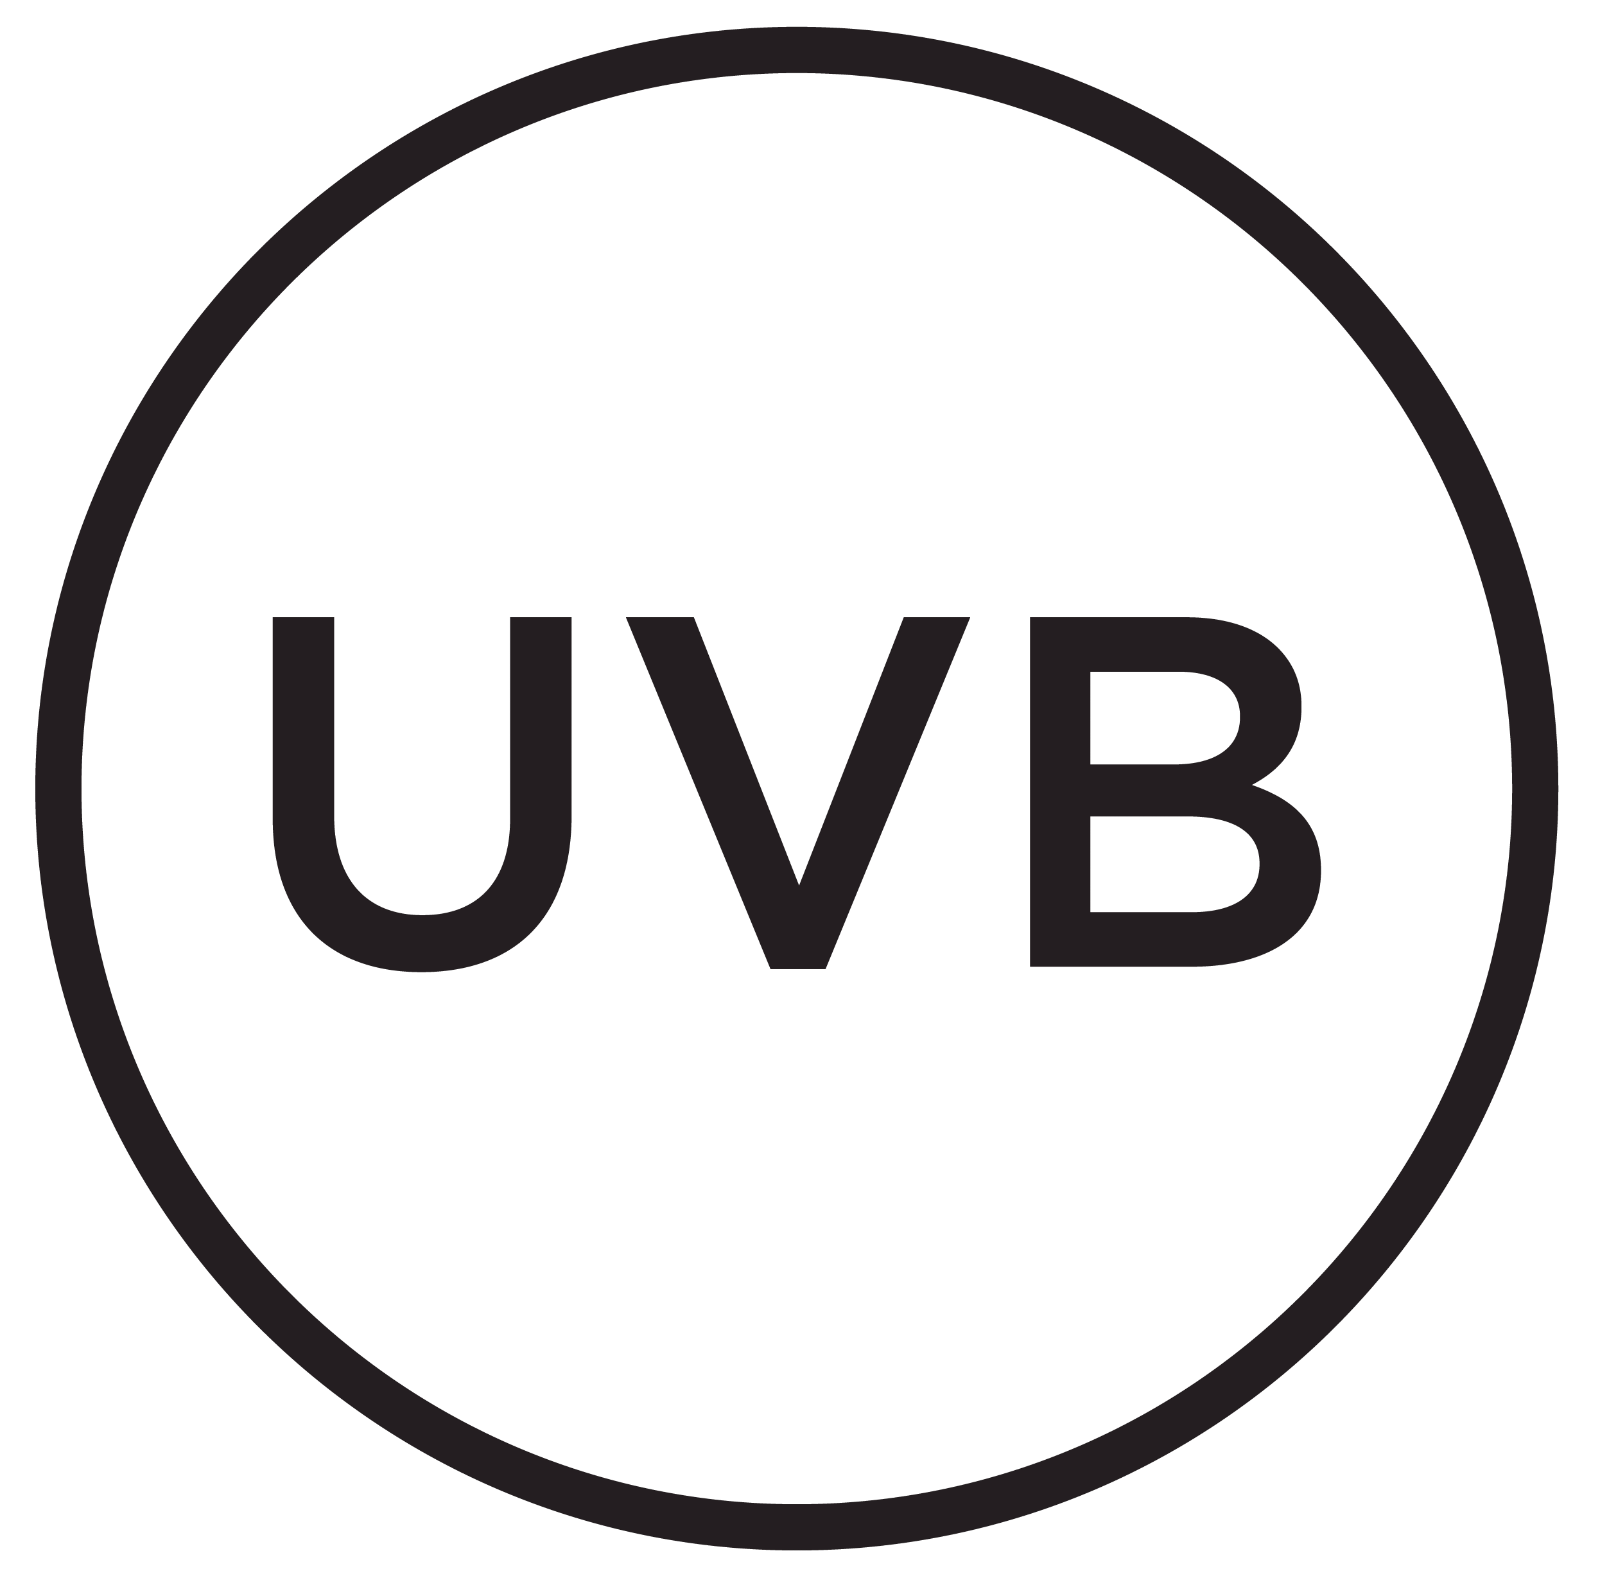 UVB